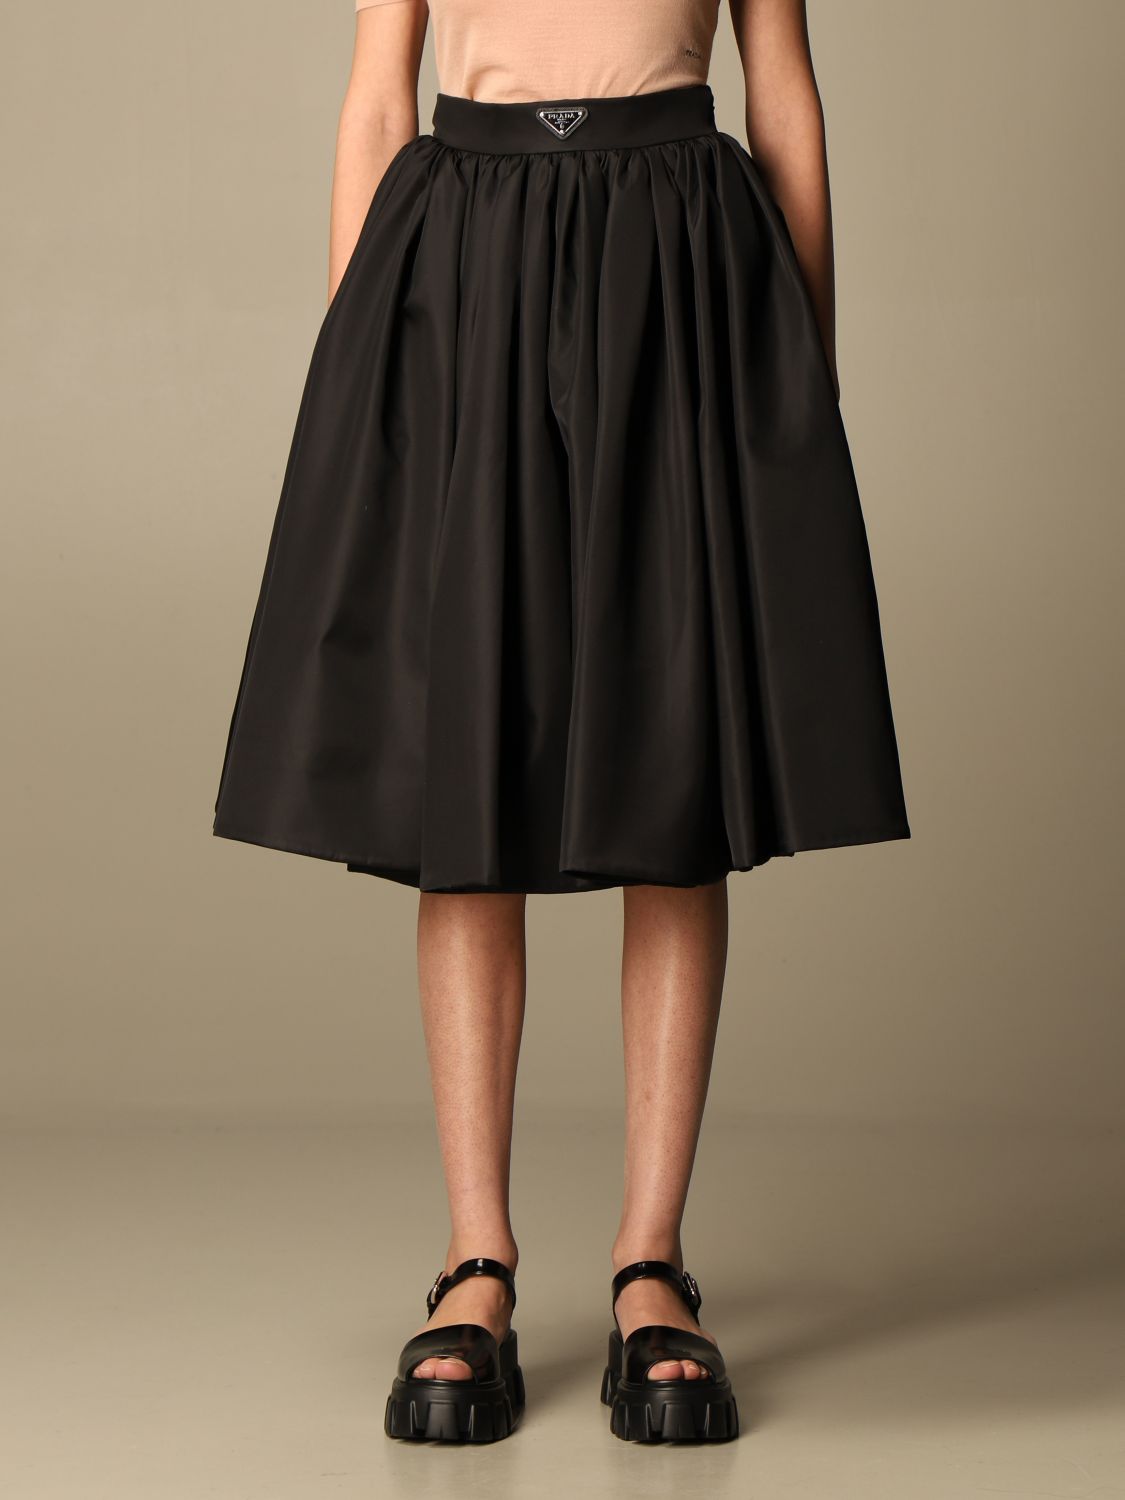 PRADA: wide skirt in re-nylon gabardine - Black | Prada skirt 